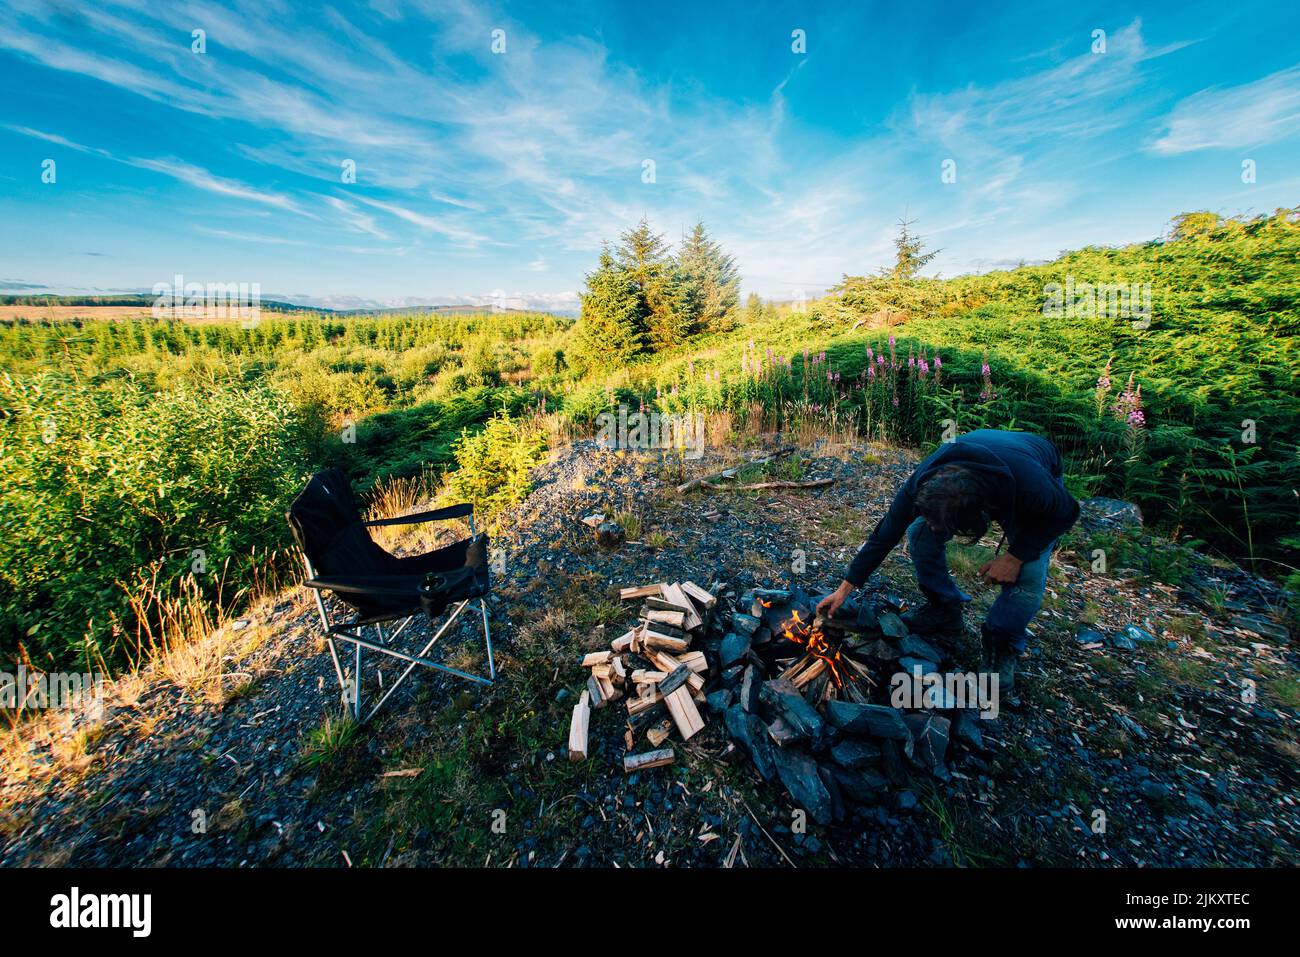 Un uomo soleggiato costruisce un fuoco nel parco forestale galloway, in scozia, circondato da alberi e natura. Solitudine, fuori dai sentieri battuti, scappamento, campeggio selvaggio Foto Stock